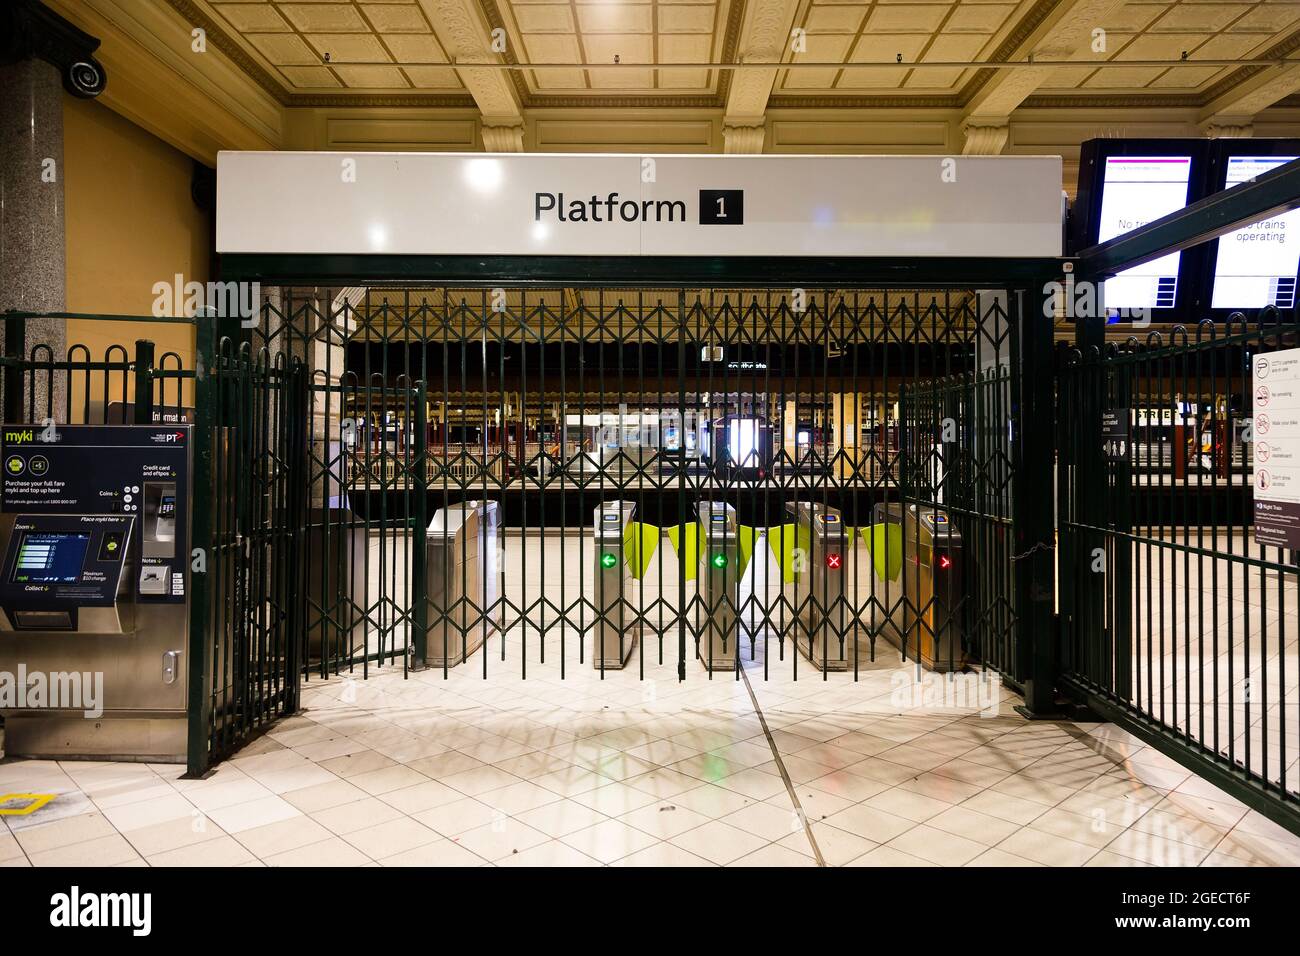 Melbourne, Australien, 27. August 2020. Blick auf den Eingang von Bahnsteig 1 des Bahnhofs Flinders Street unter der Ausgangssperre. (Foto von Dave Hewison/Speed Media) Quelle: Dave Hewison/Speed Media/Alamy Live News Stockfoto